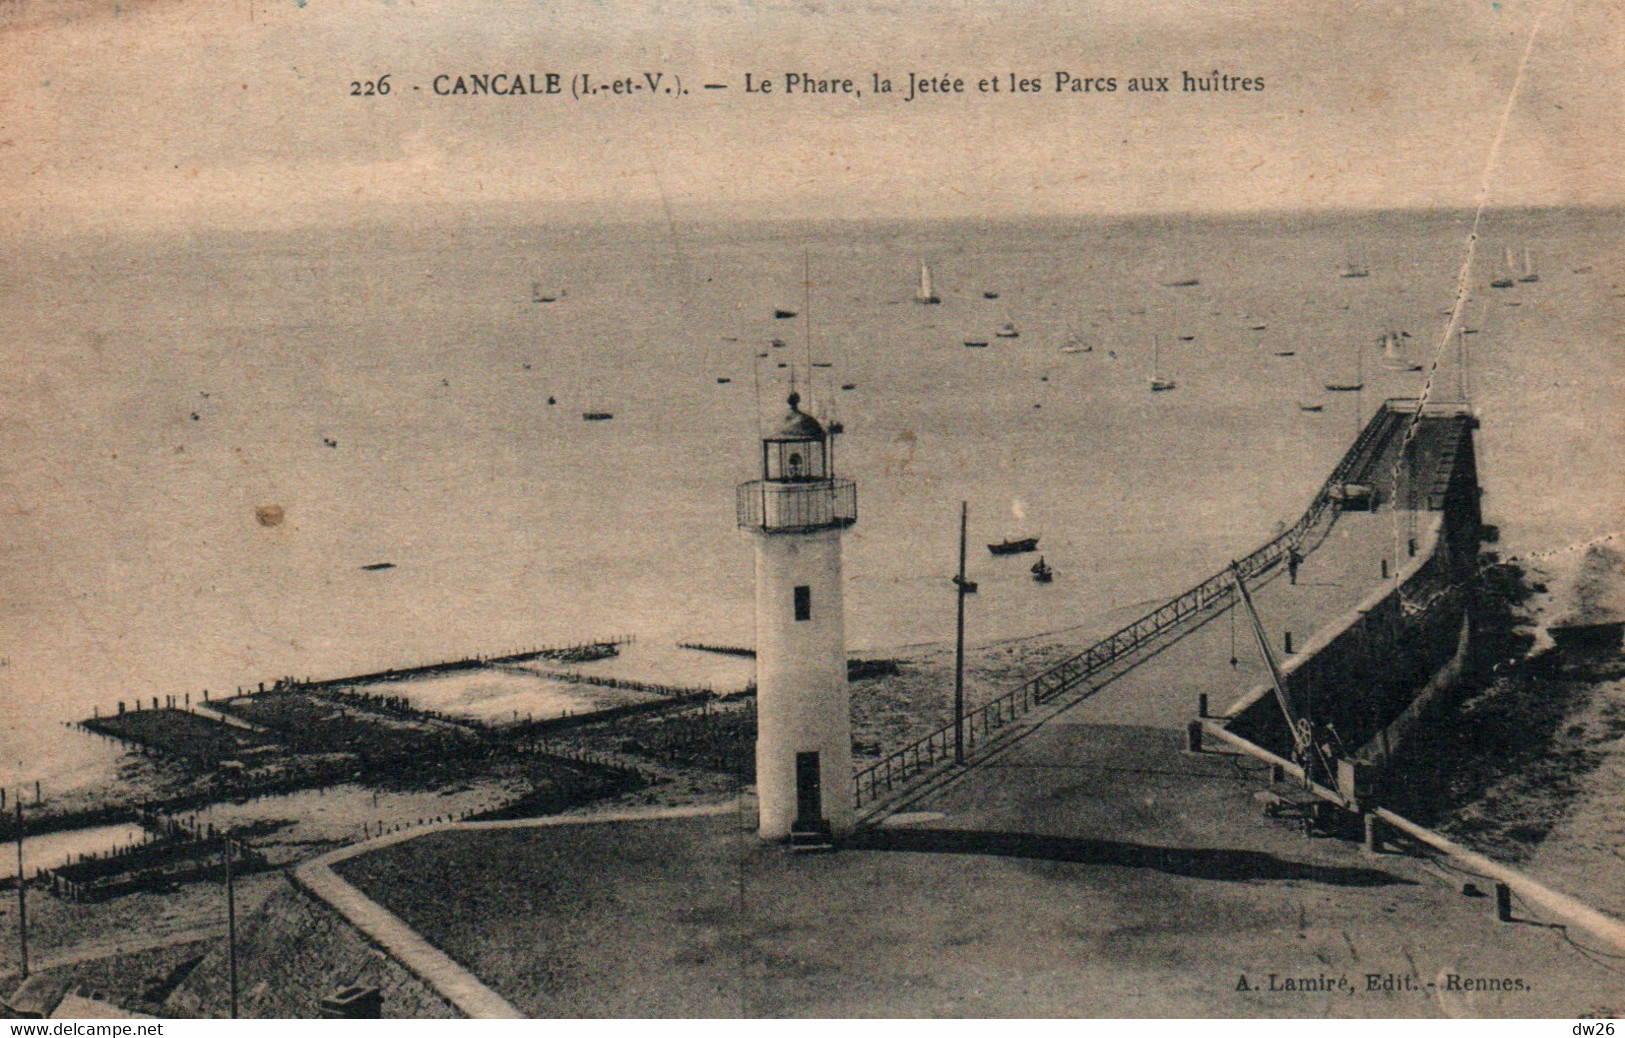 Cancale (Ile-et-Vilaine) Le Phare, La Jetée Et Les Parcs à Huîtres - Edition Lamire, Carte N° 226 - Leuchttürme